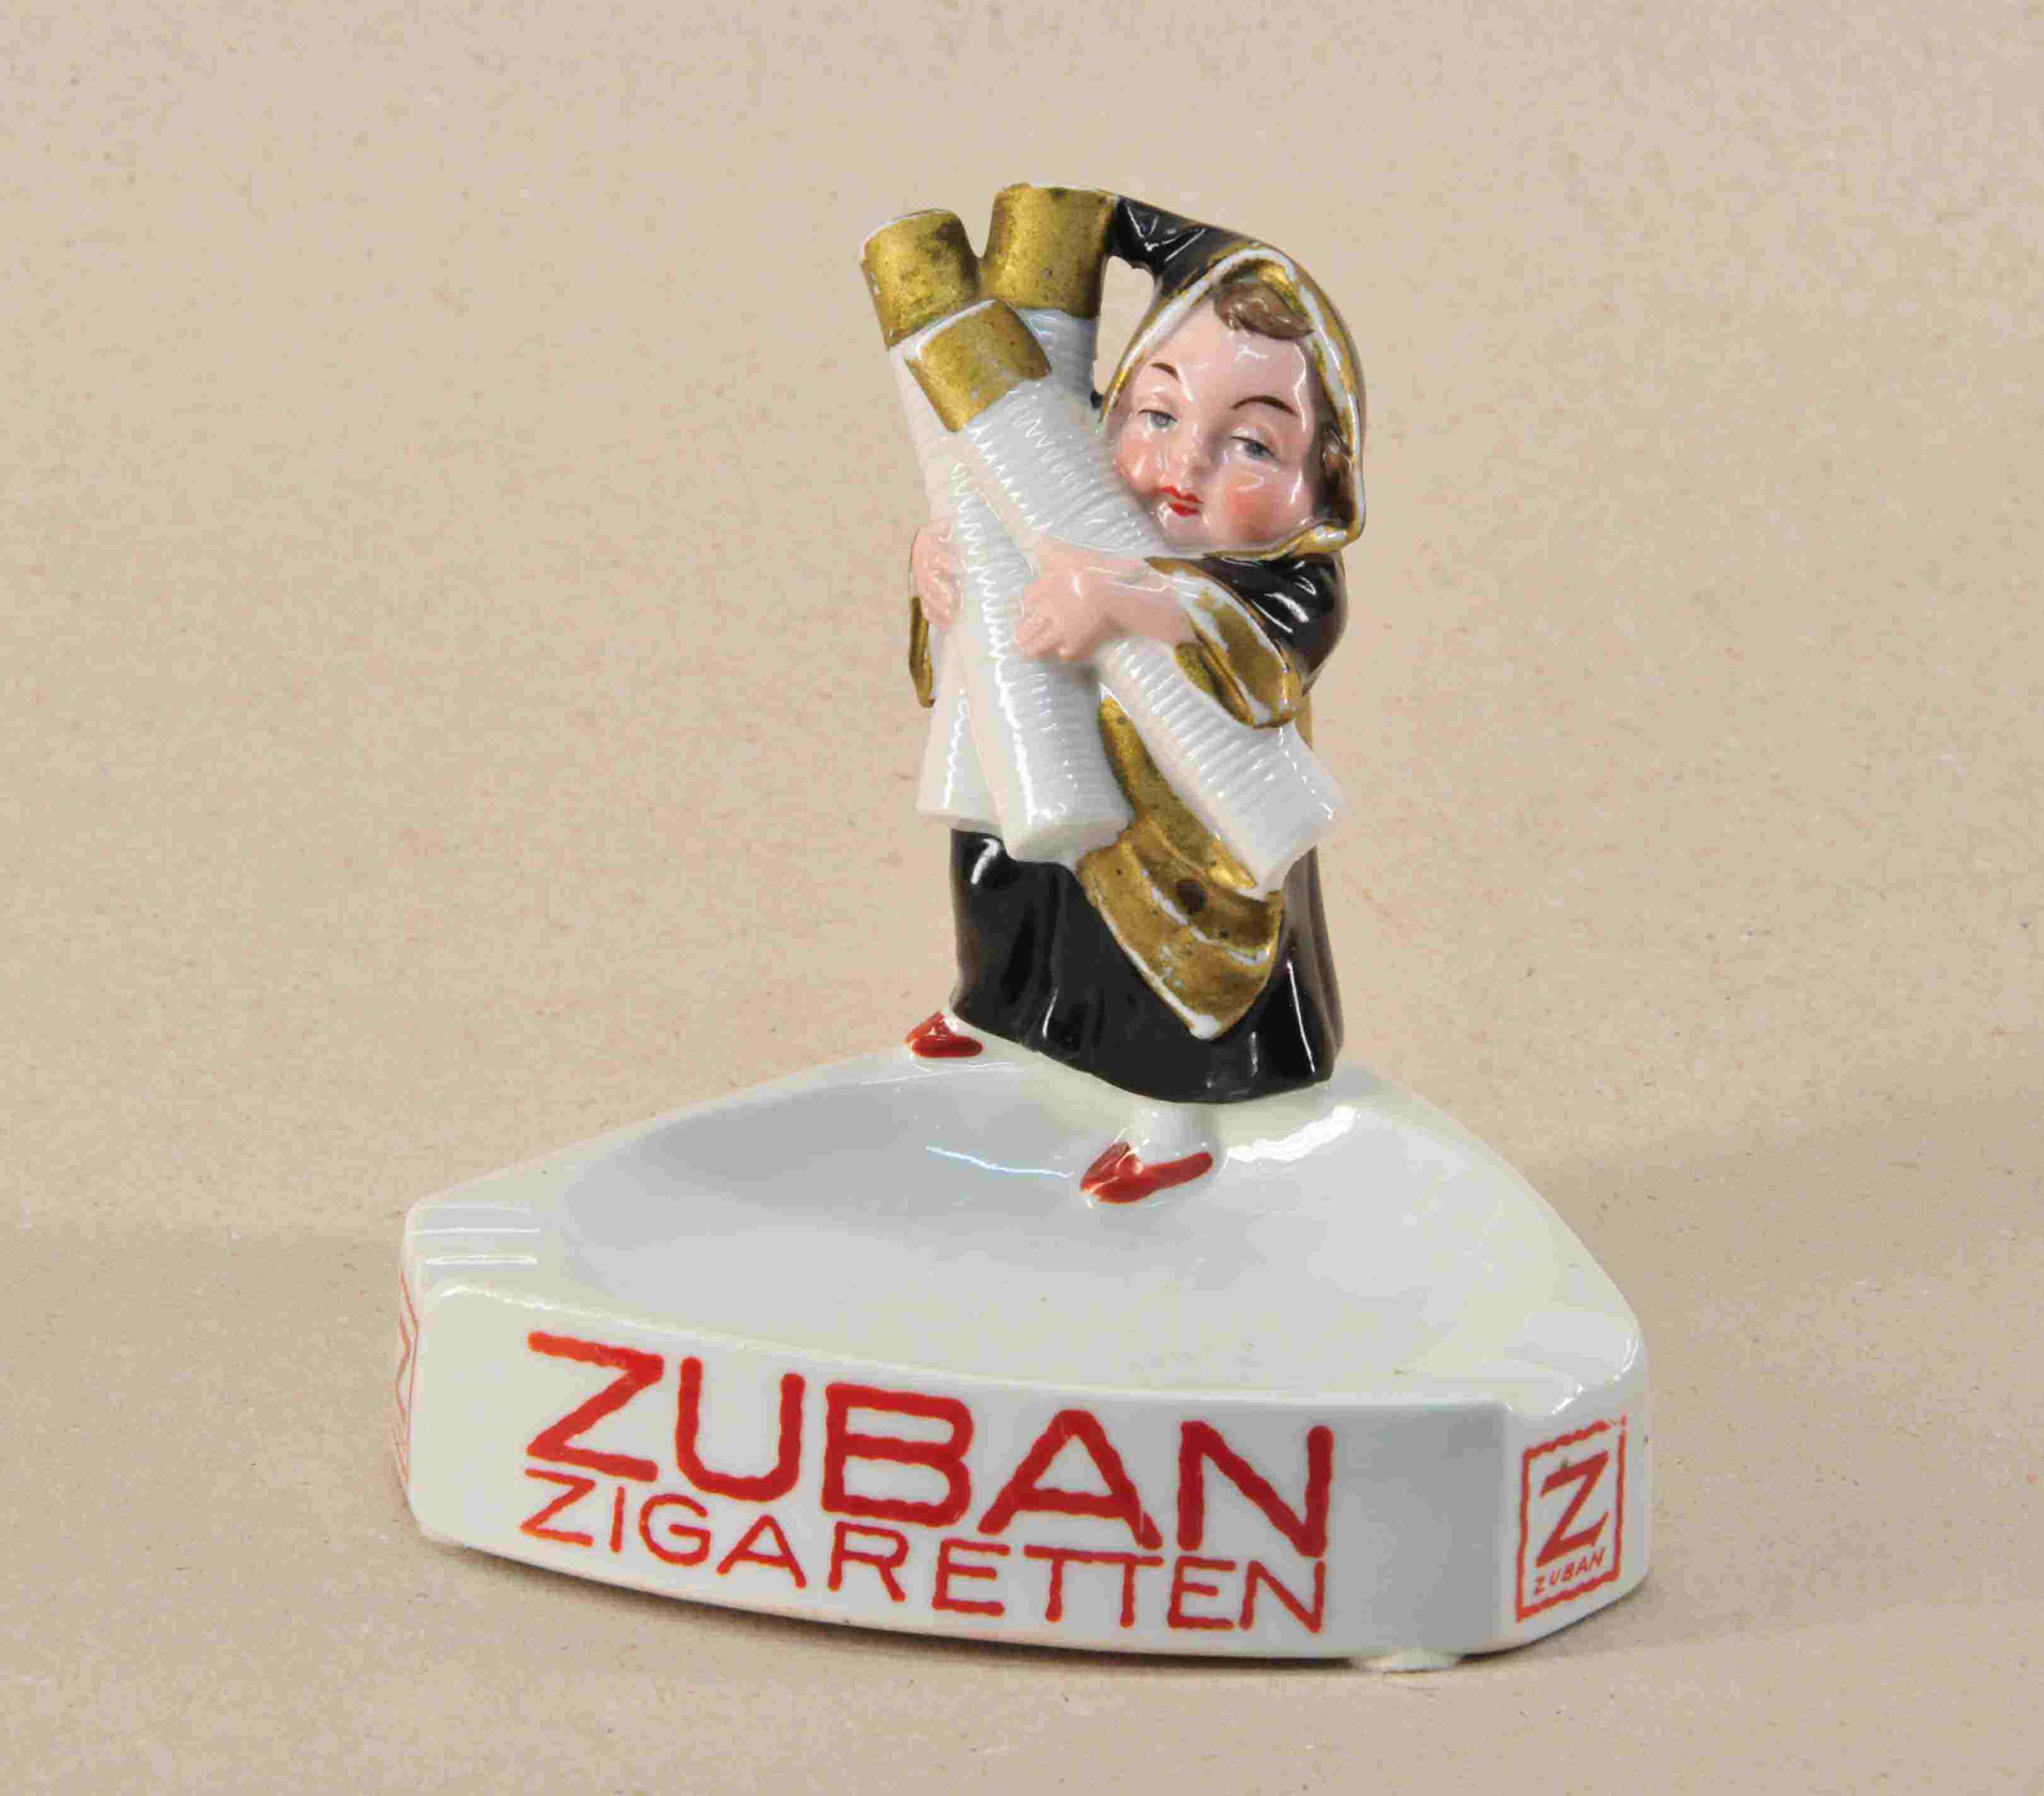 Zuban Zigaretten Ascher 